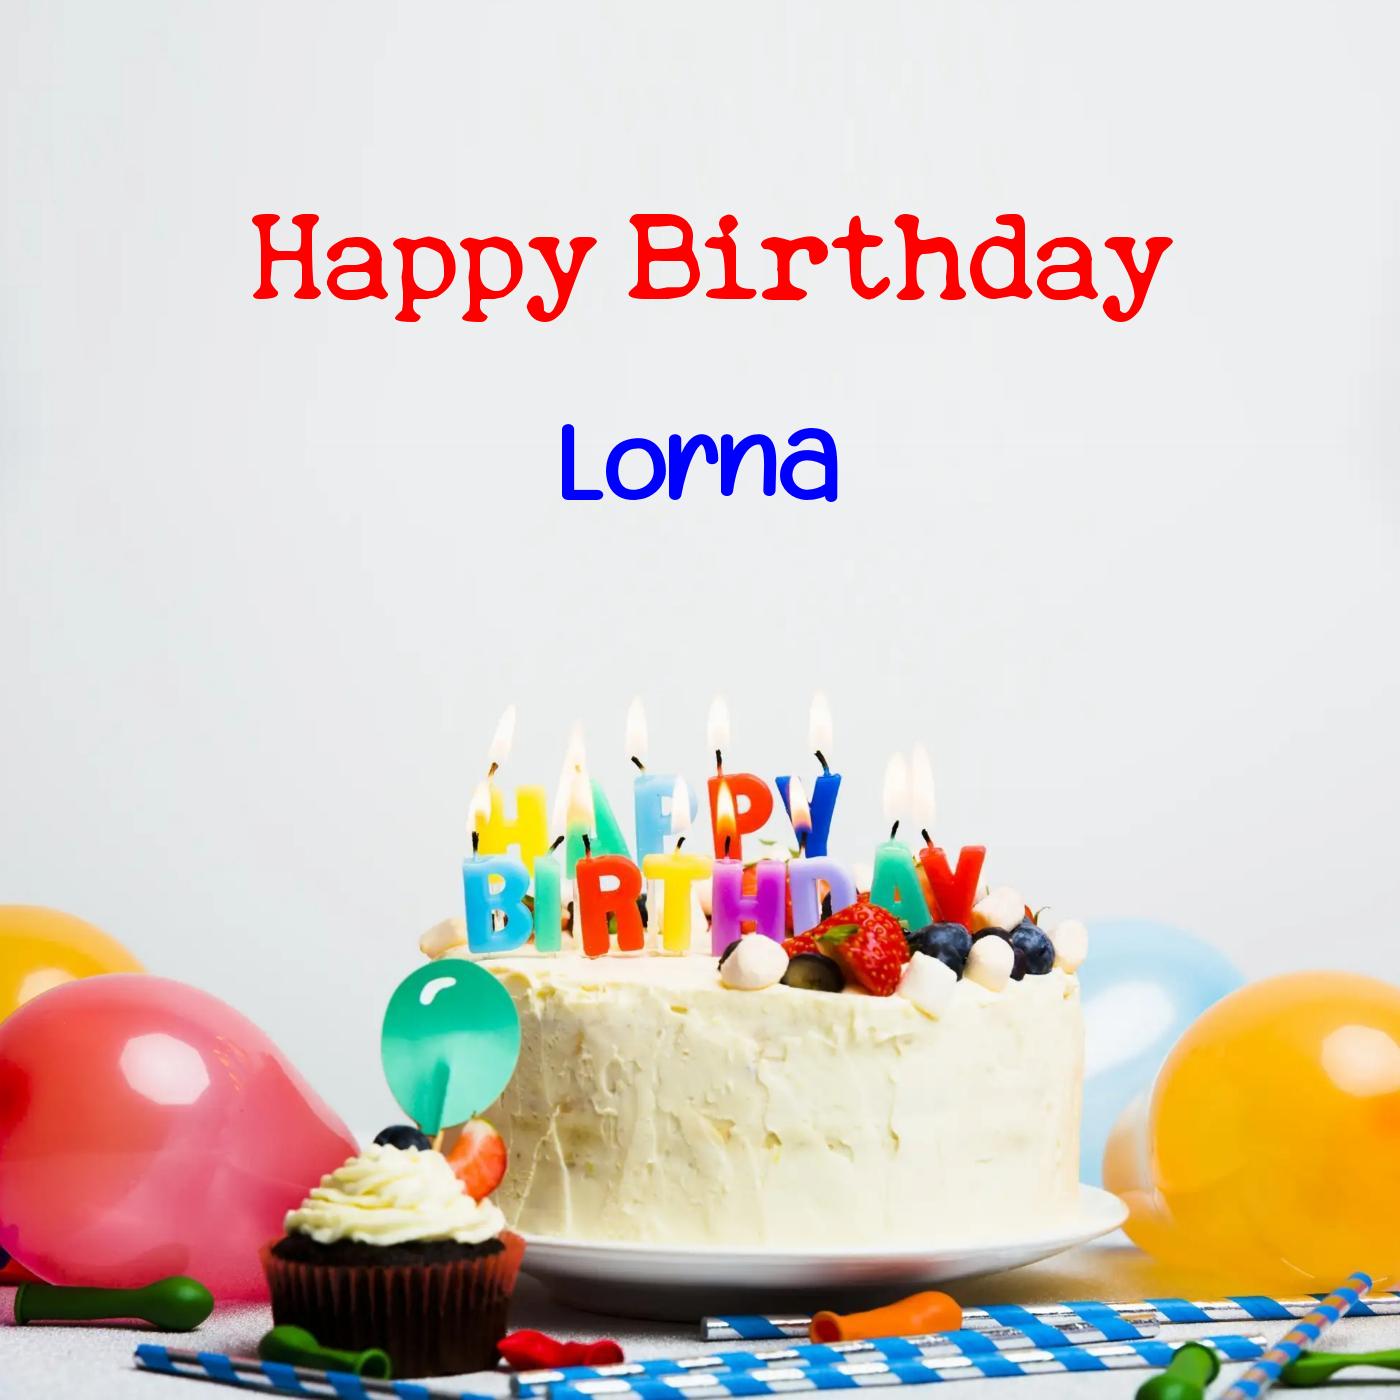 Happy Birthday Lorna Cake Balloons Card